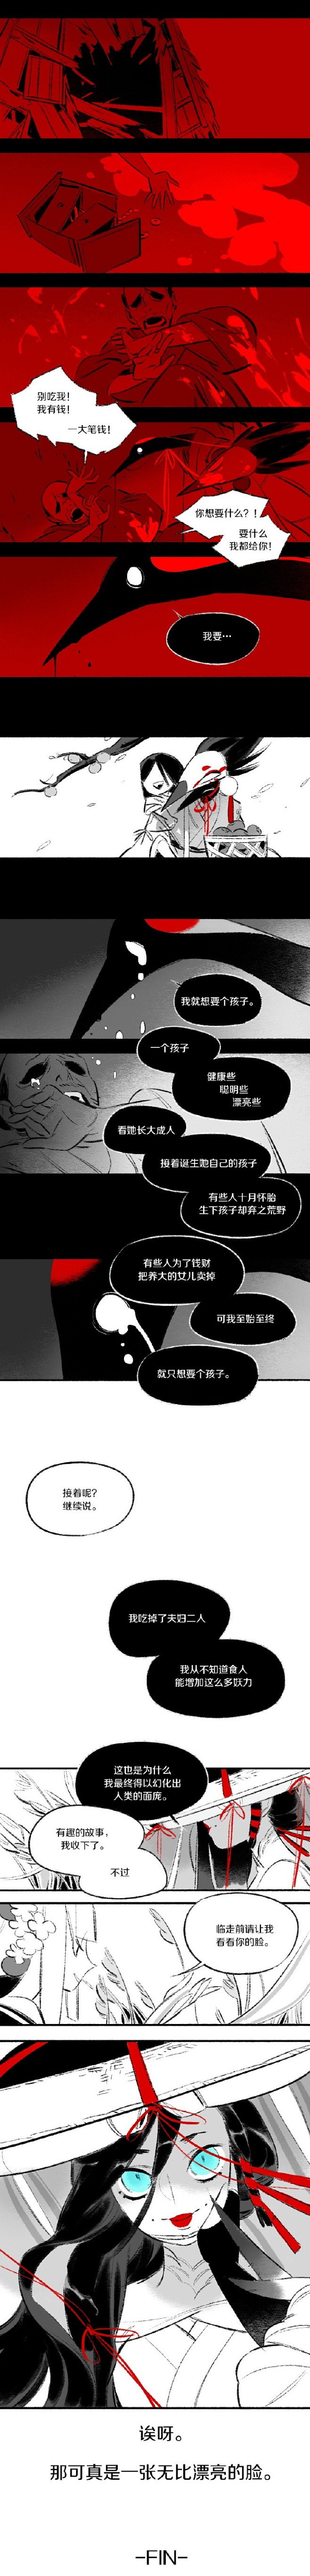 #阴阳师漫画大赛# 画好了///1p封面...